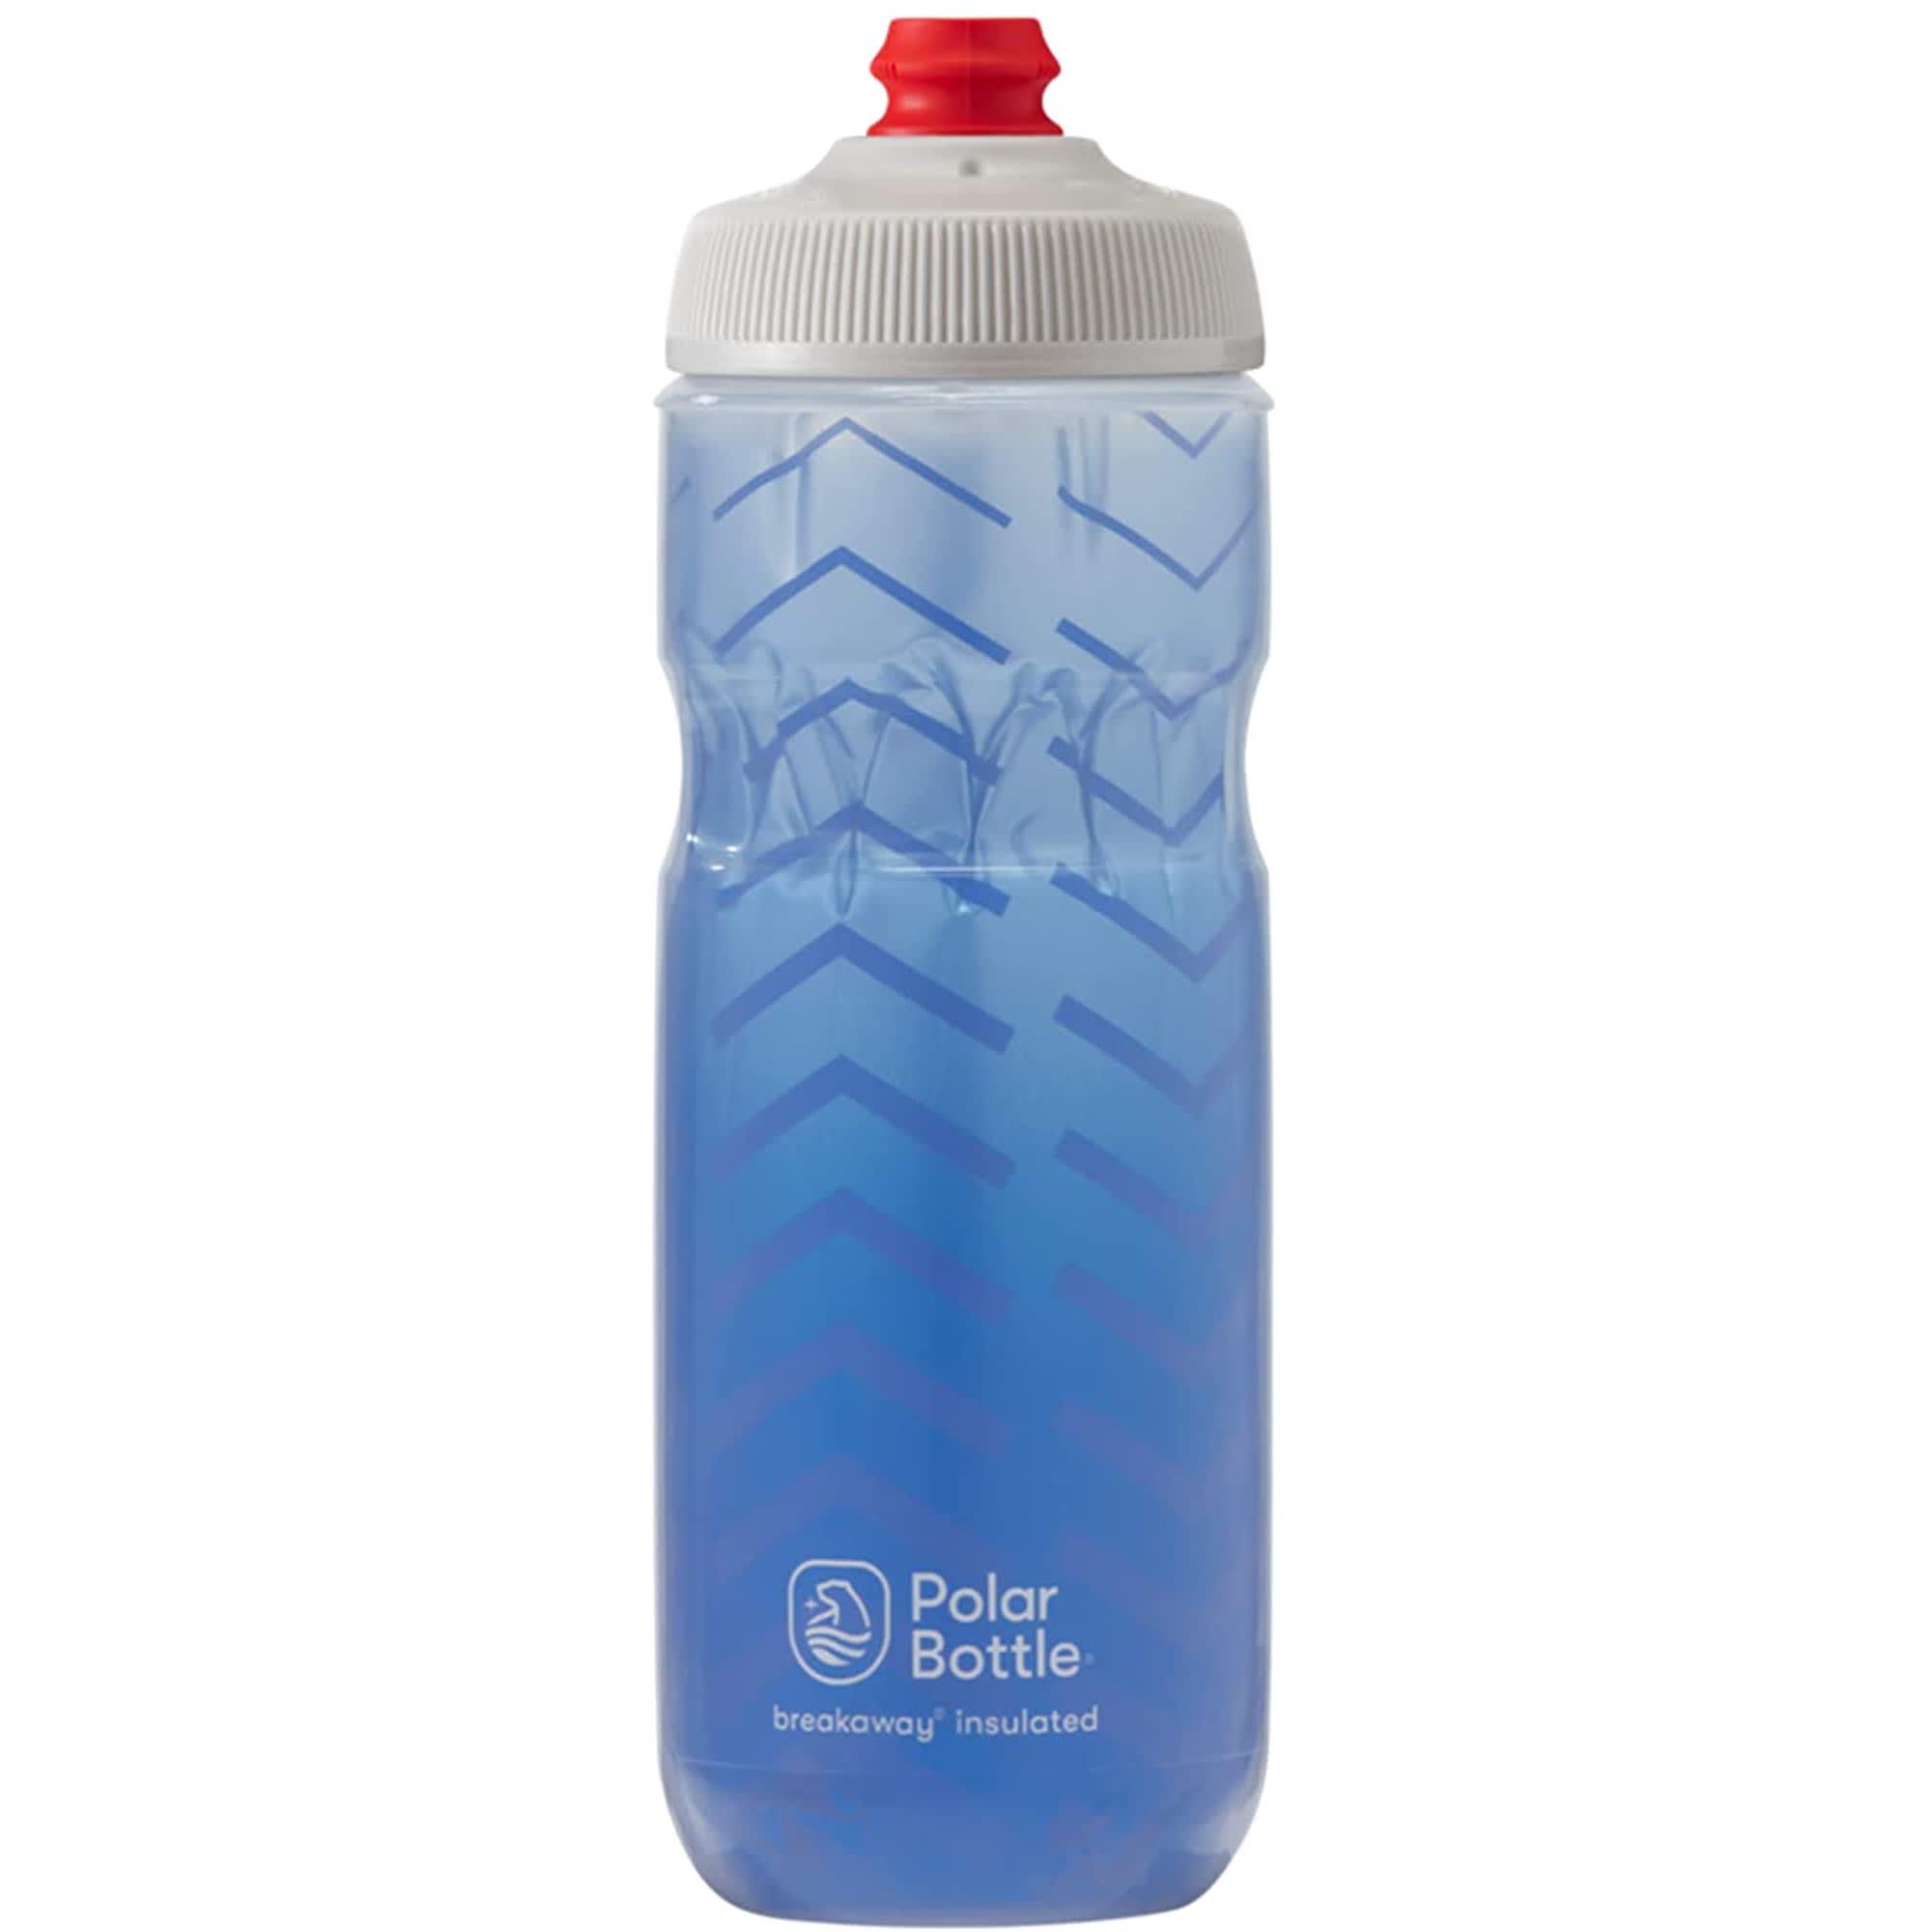 Polar Bottle Breakaway Insulated Bike Water Bottle